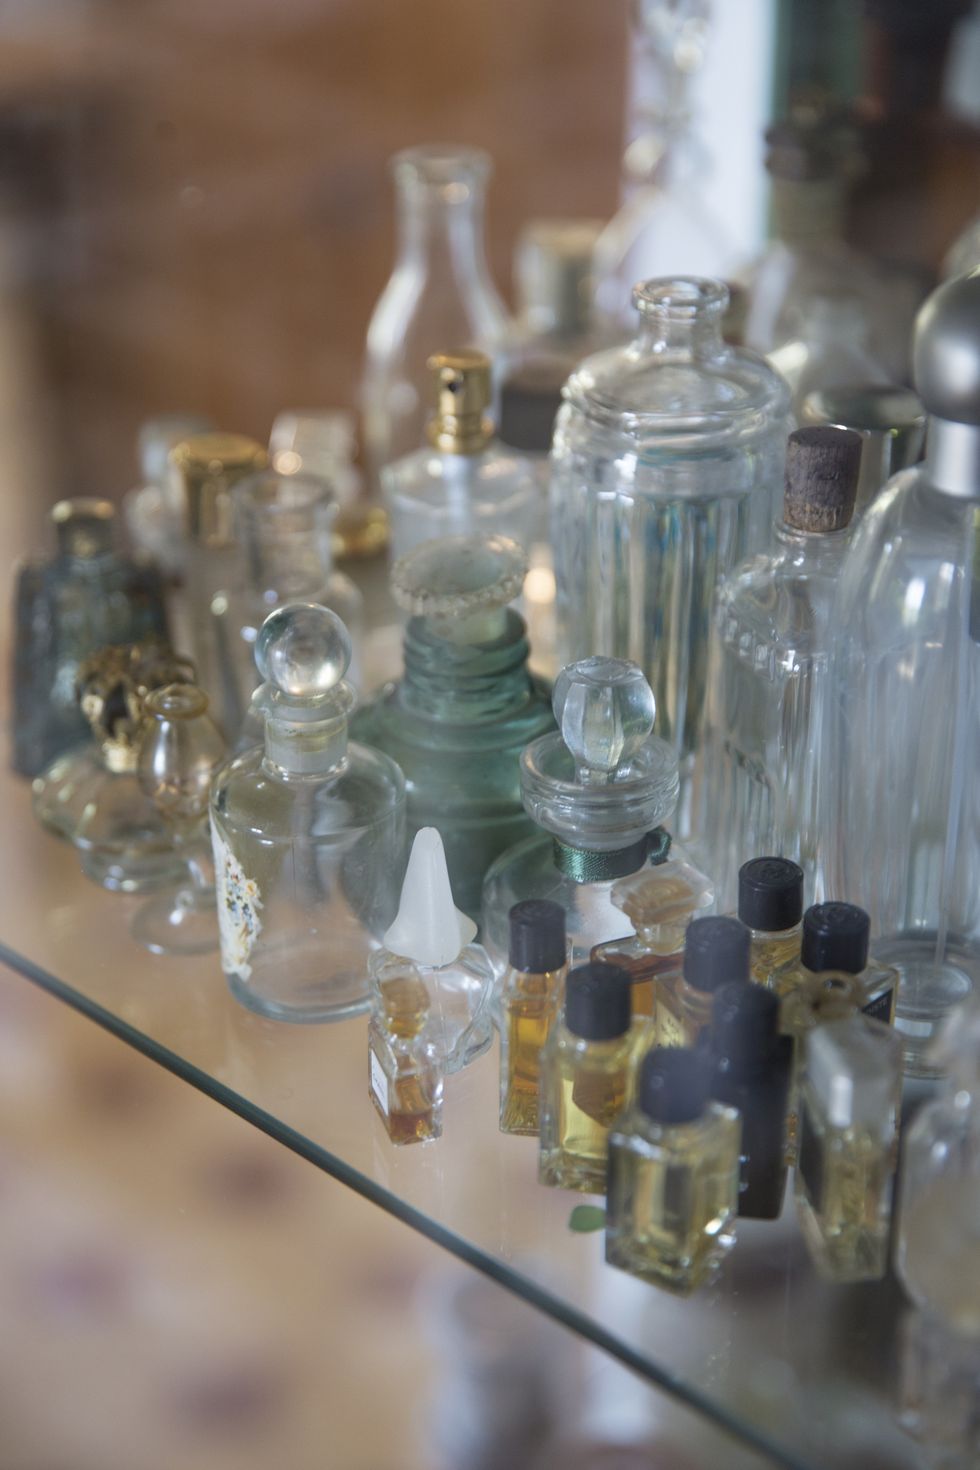 Vintage scent bottles on display shelf in handmade soap workshop